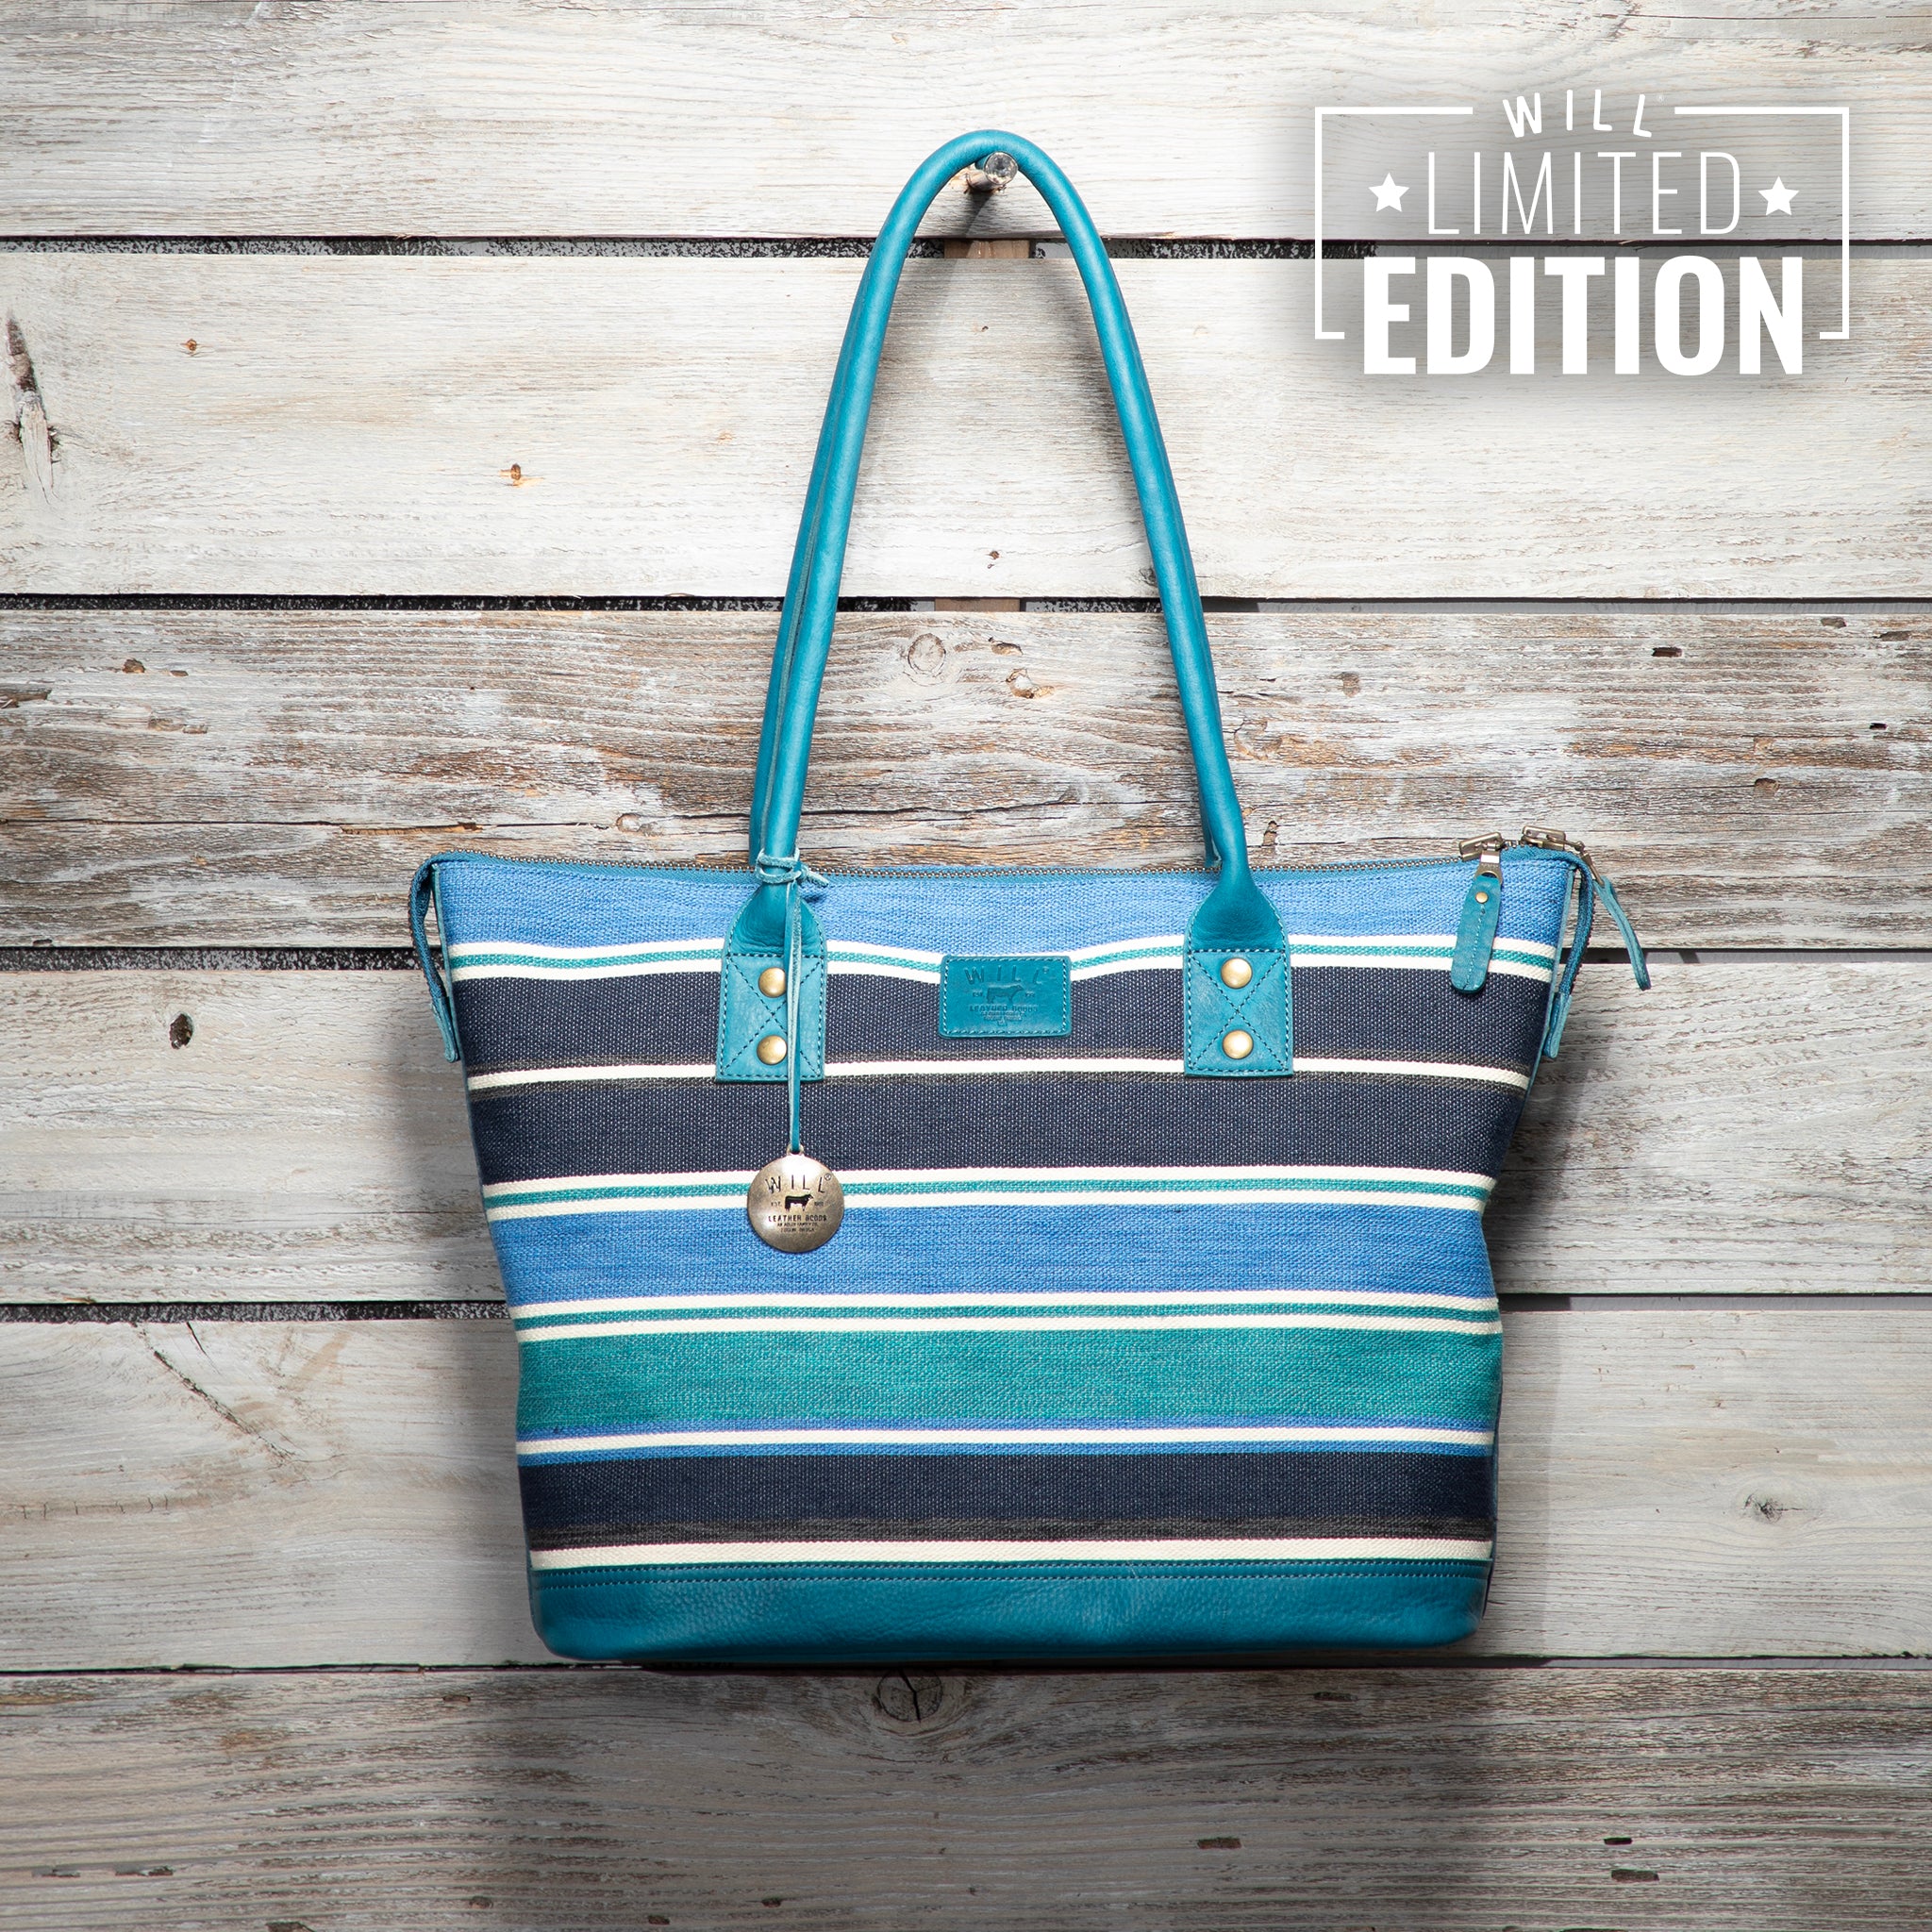 Twenty Four Seven Limited Edition Leather Tote Mountain Stripes Blue | Handbag/Shoulder Bag: Work